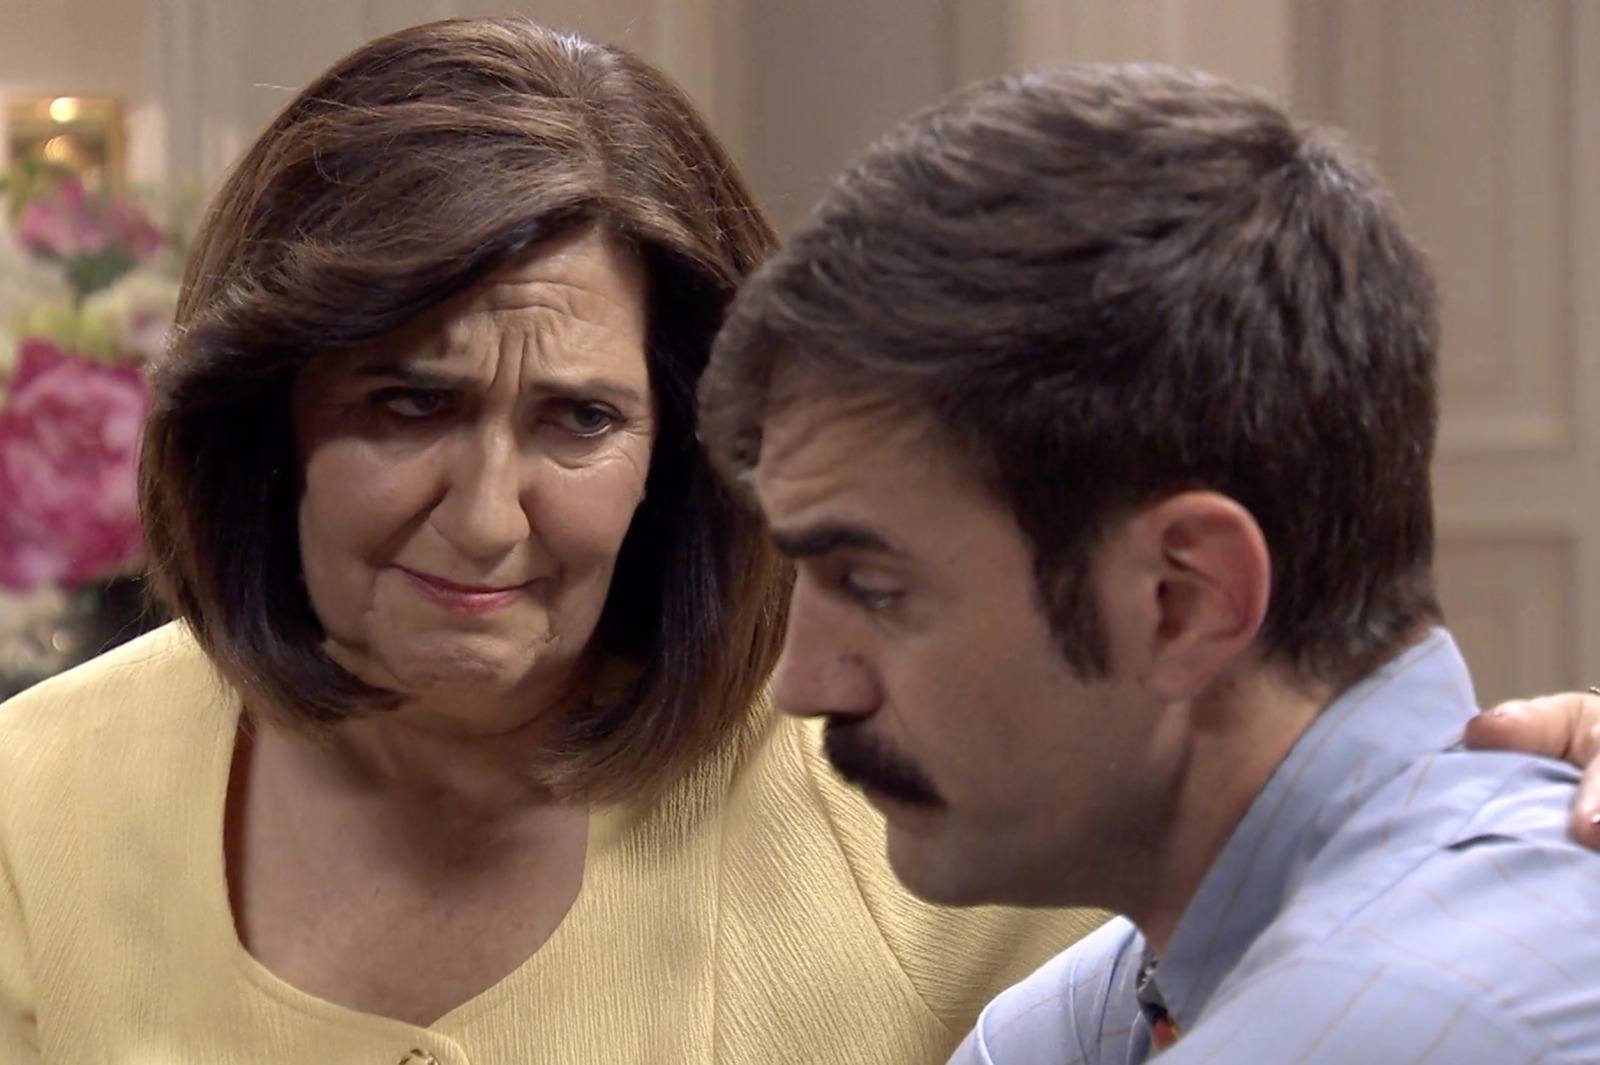 Carmen le advierte a Raúl que debe ser muy comprensivo y paciente con Coral, el amor es para siempre